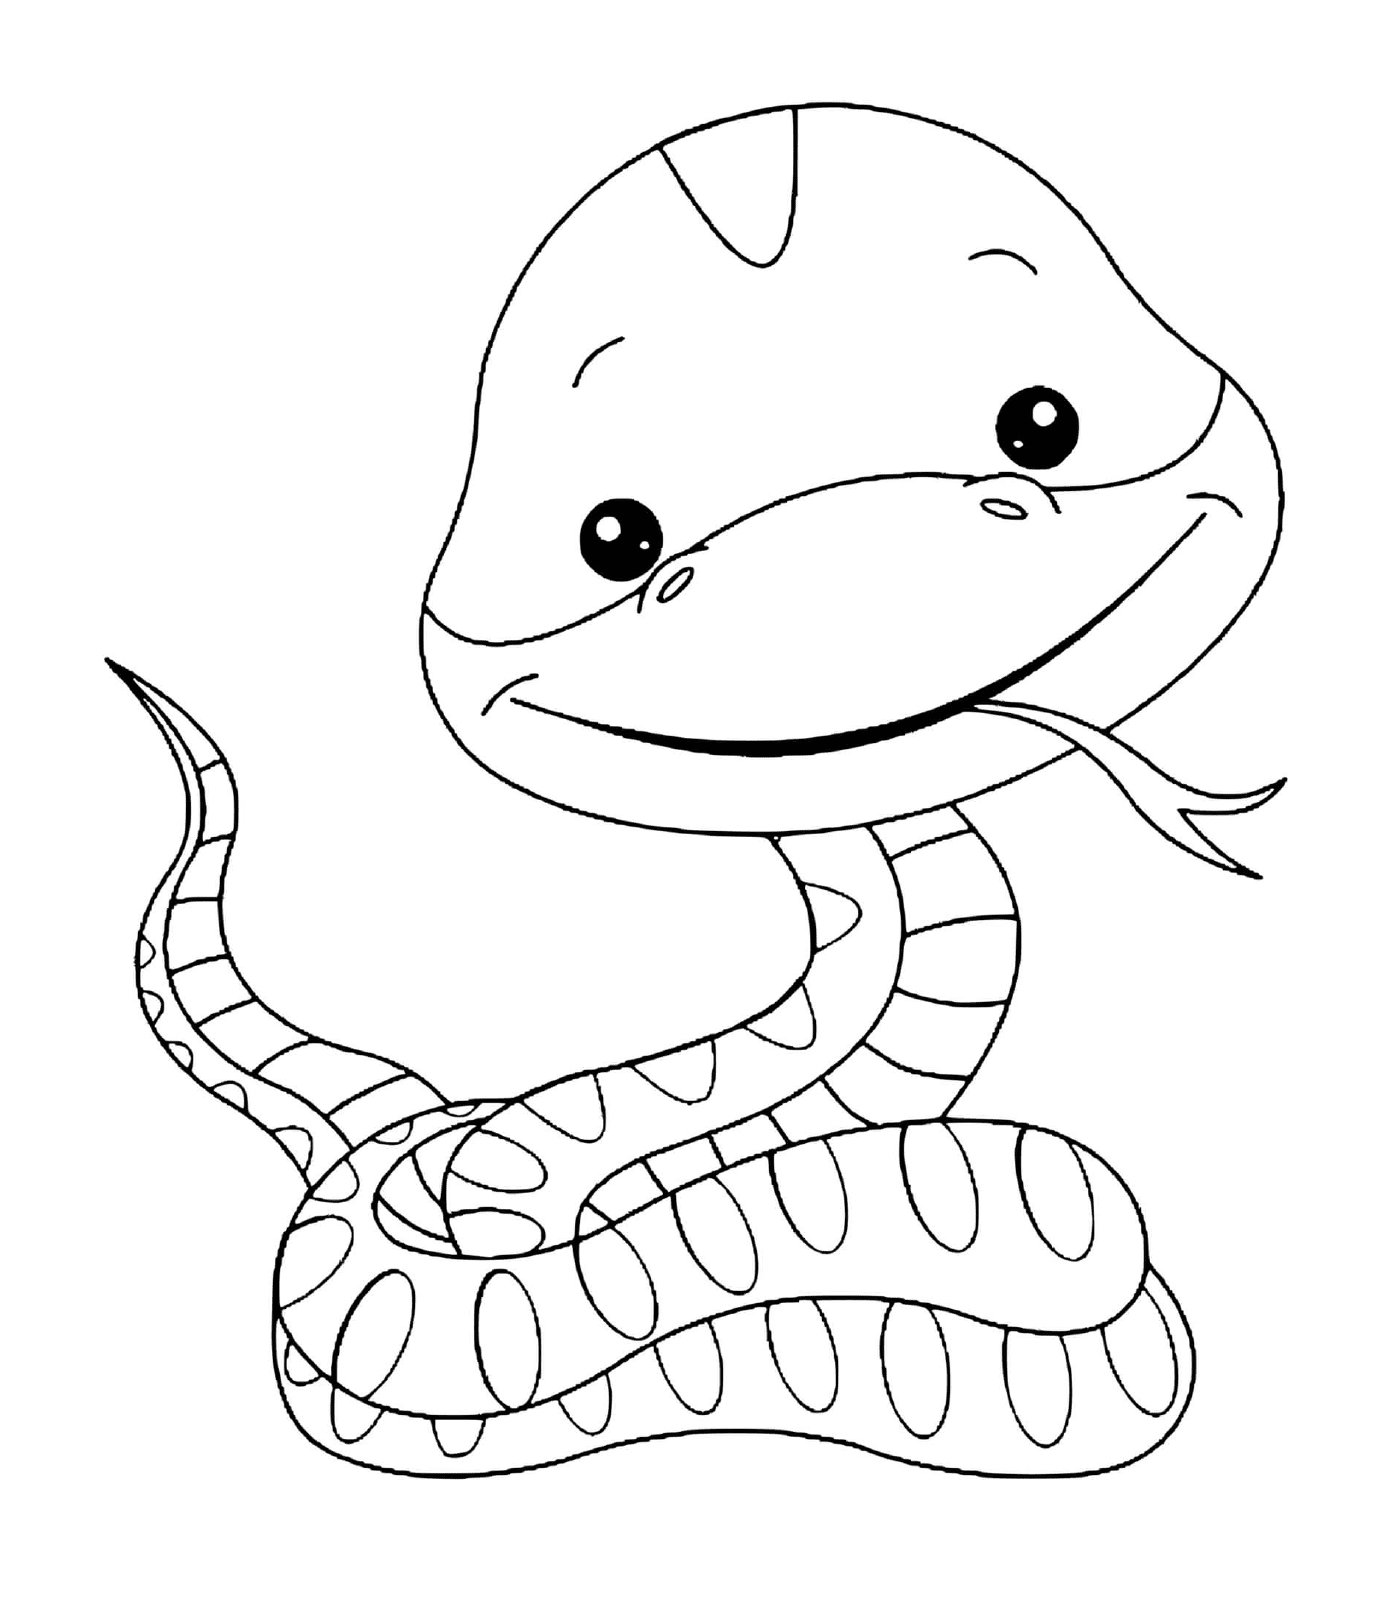  Easy snake for children 